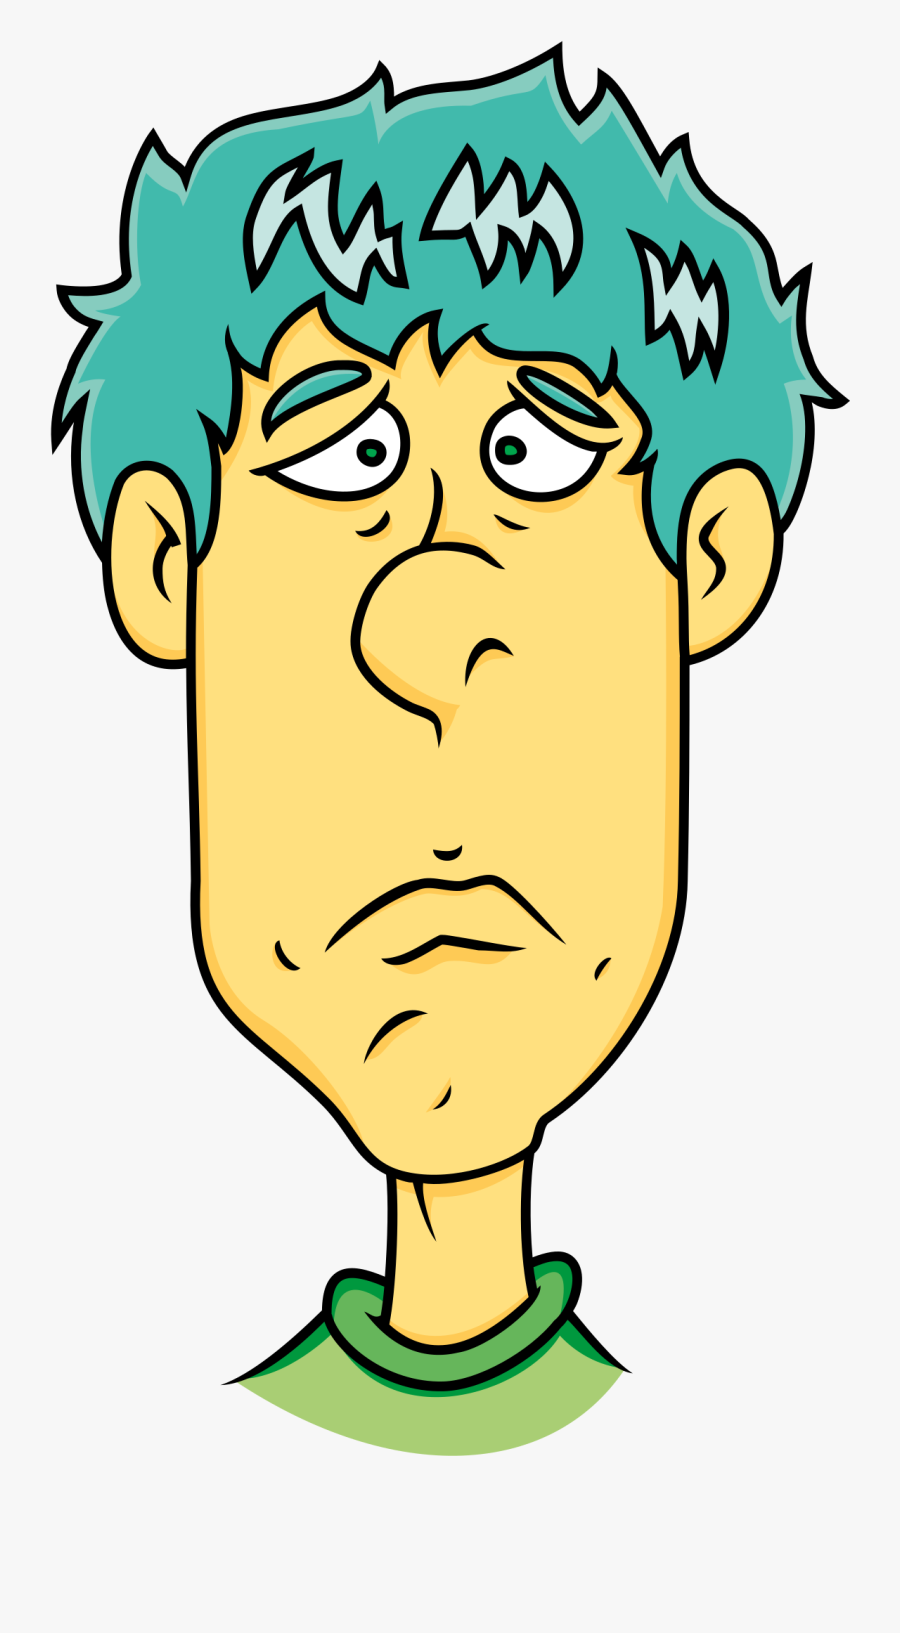 Face Of Sad Man - Cartoon Clipart Sad Man, Transparent Clipart